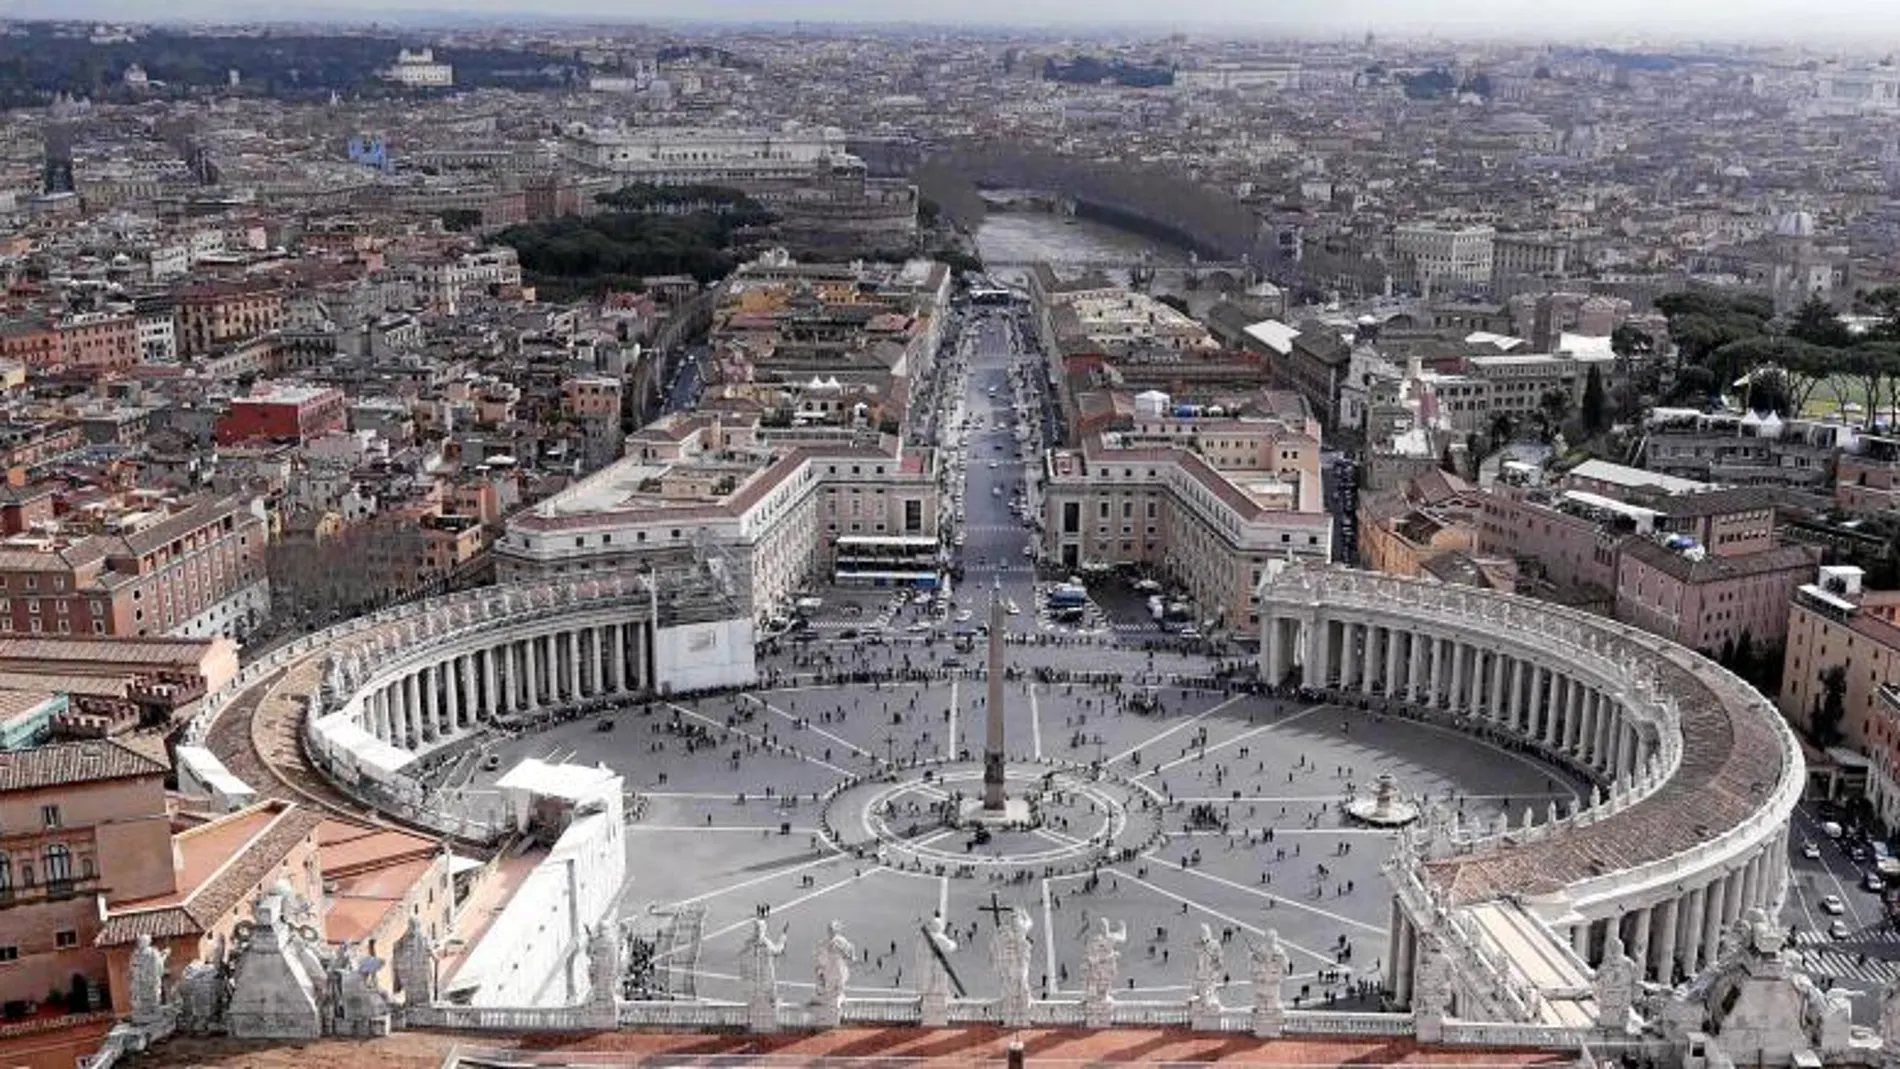 Vista del Vaticano y de la ciudad de Roma desde la cúpula de la basílica de San Pedro